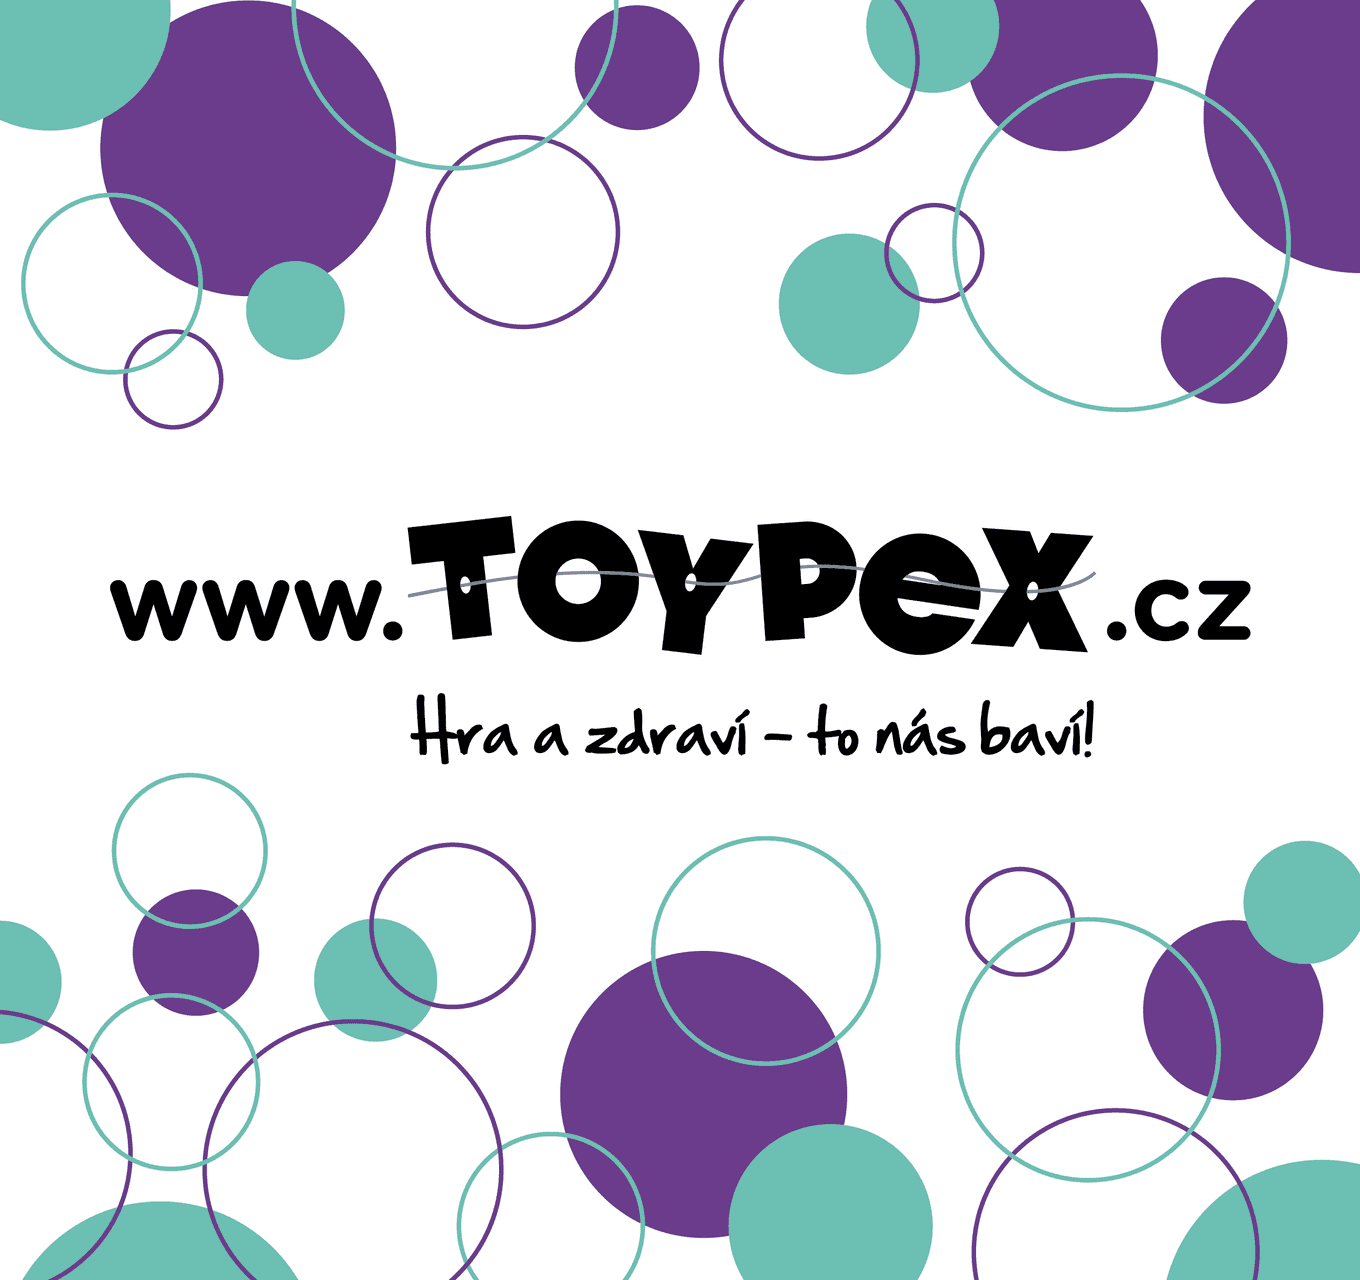 Představujeme nového partnera - Toypex